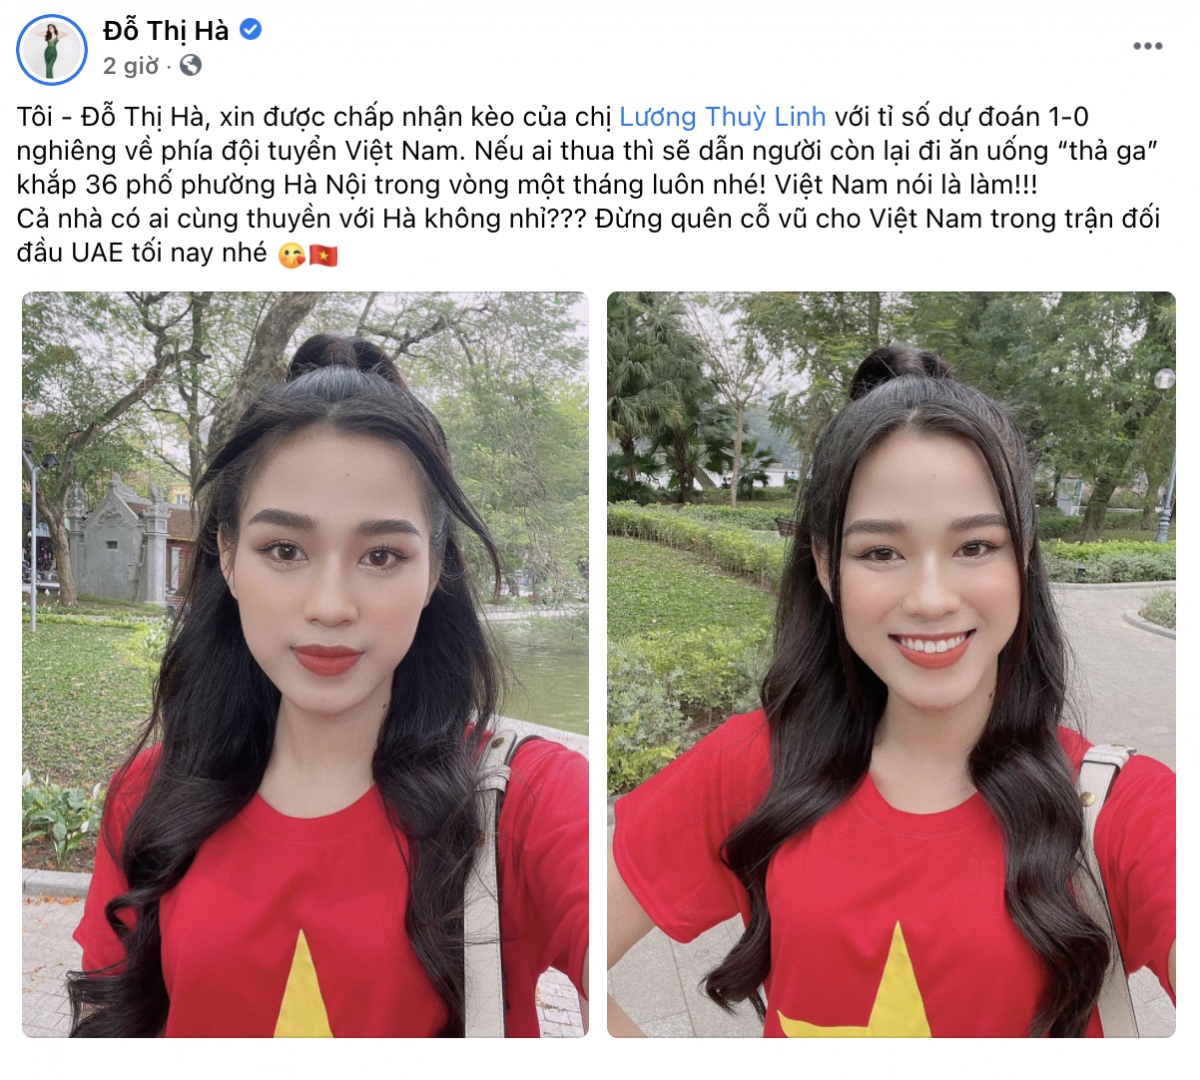 Tiểu Vy, Lương Thùy Linh, Đỗ Hà nhiệt tình ủng hộ đội tuyển Việt Nam